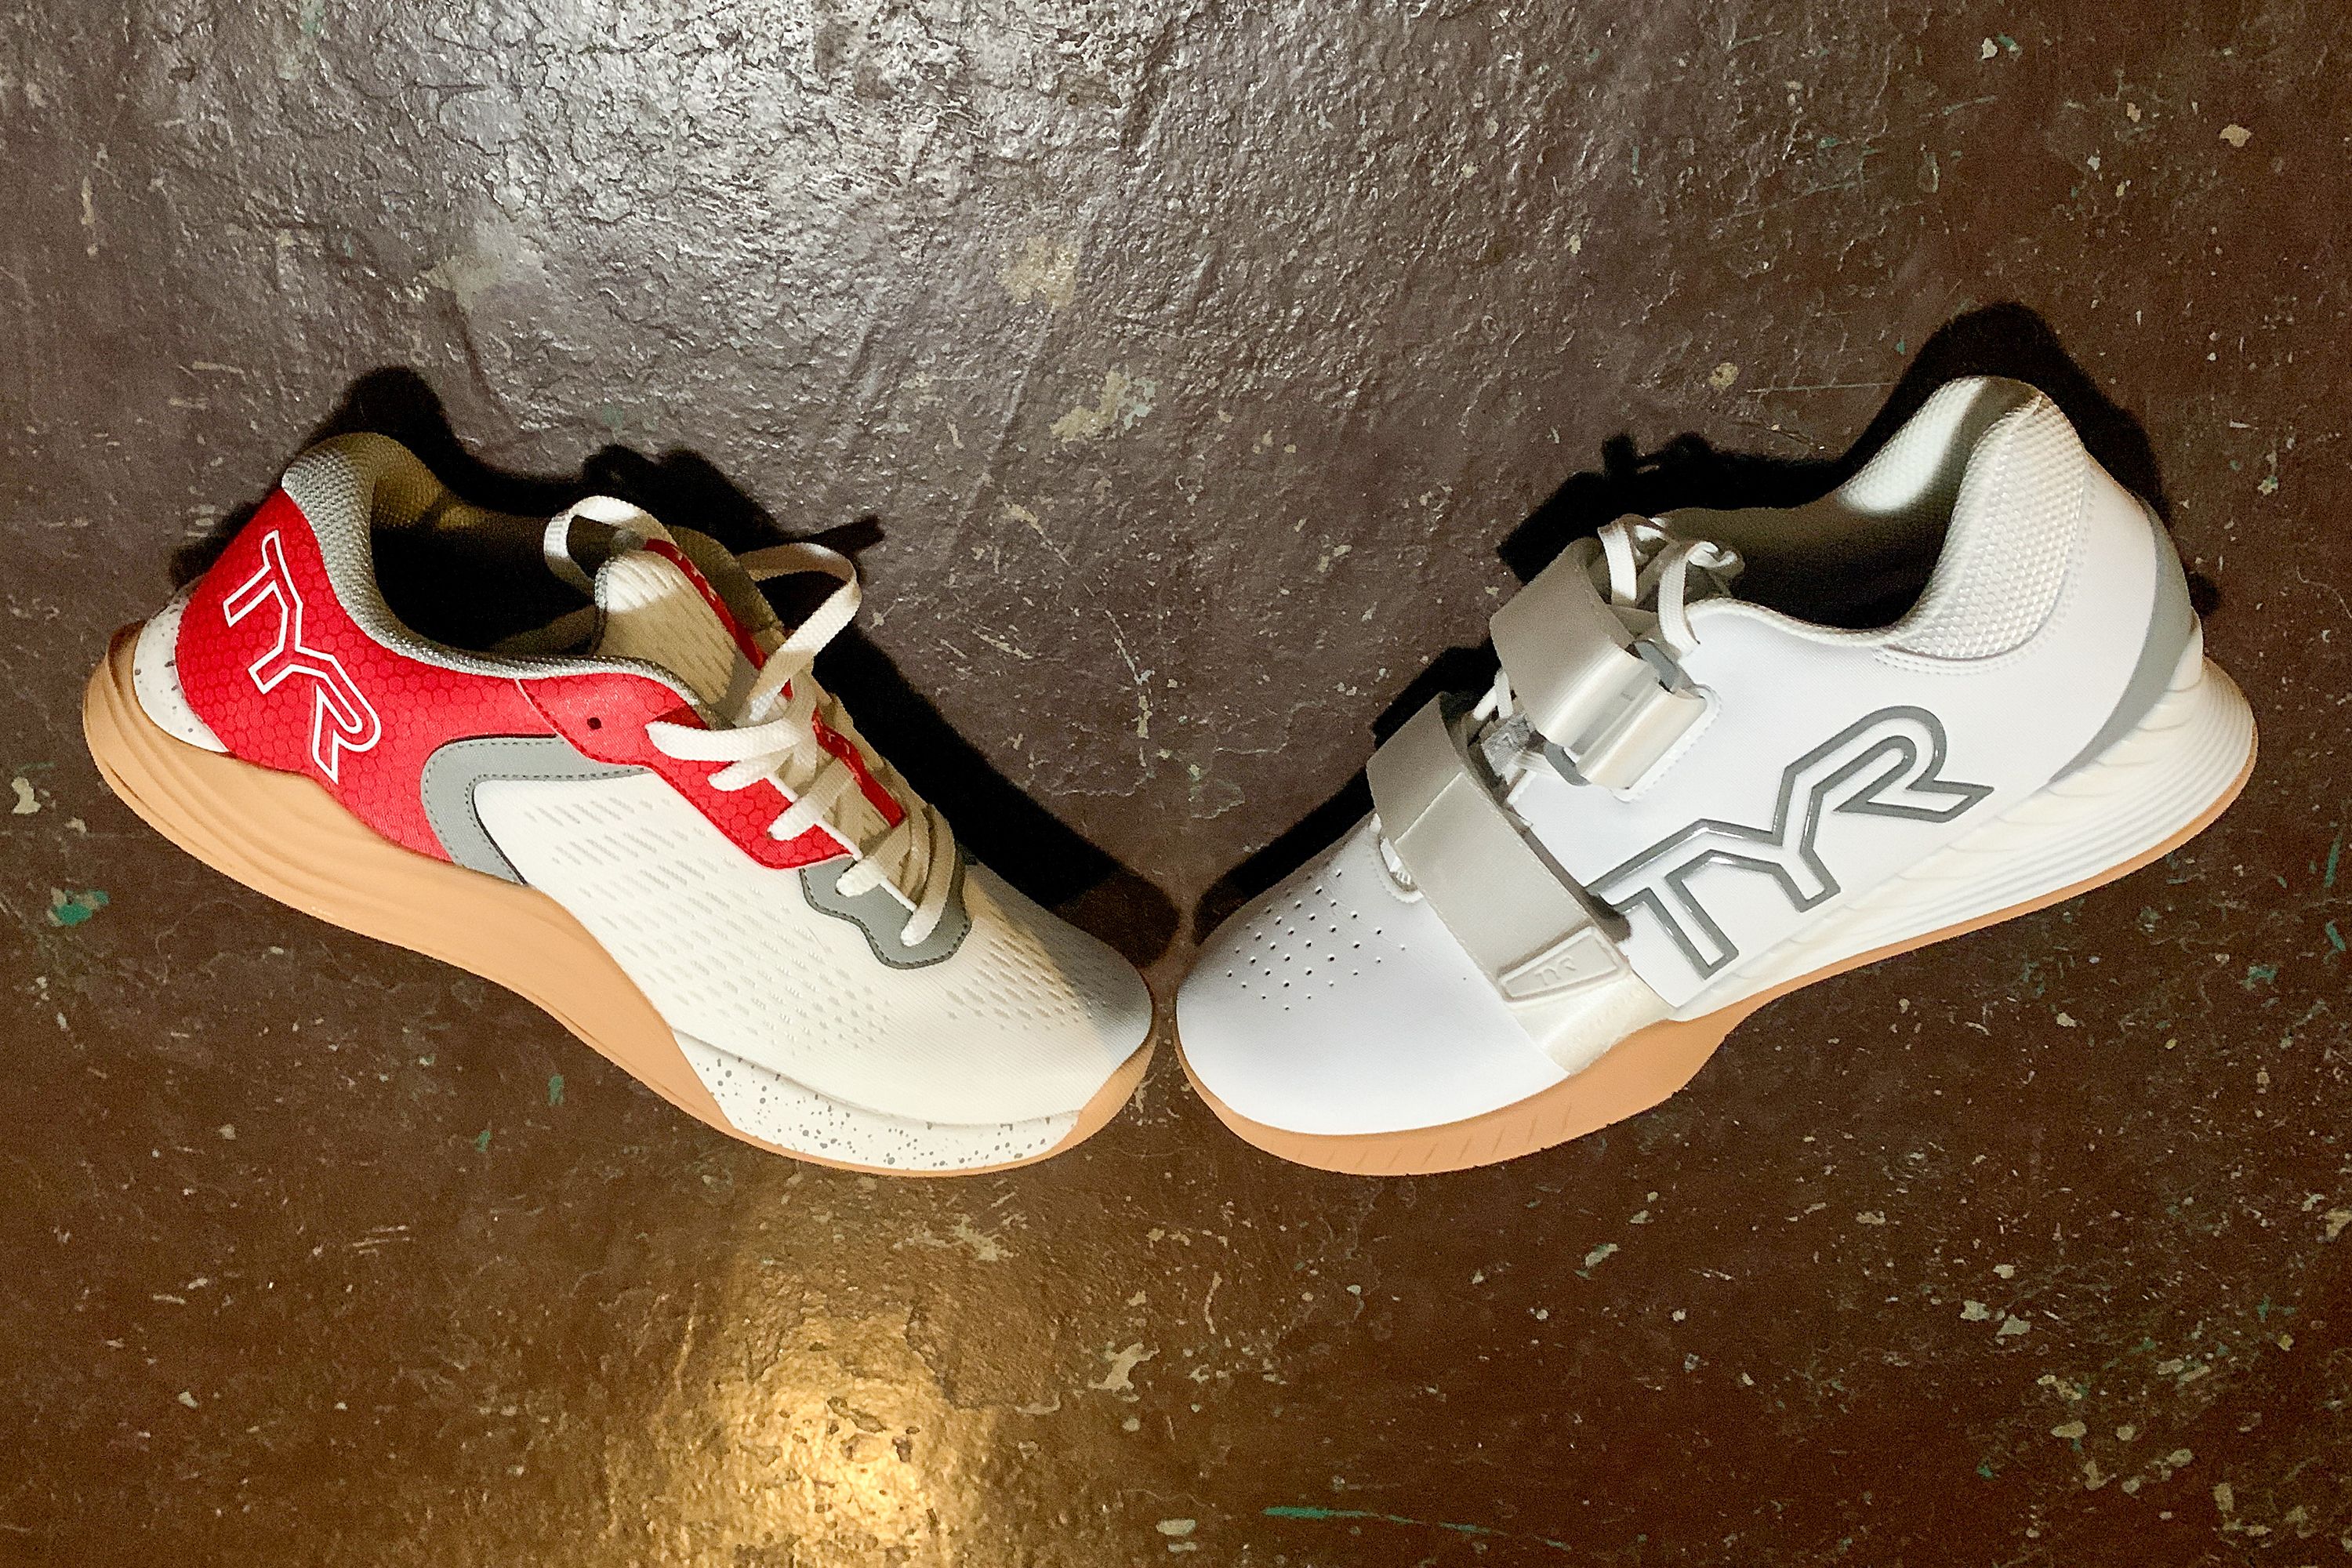 TYR Footwear - Elite Line of Sporting Shoes